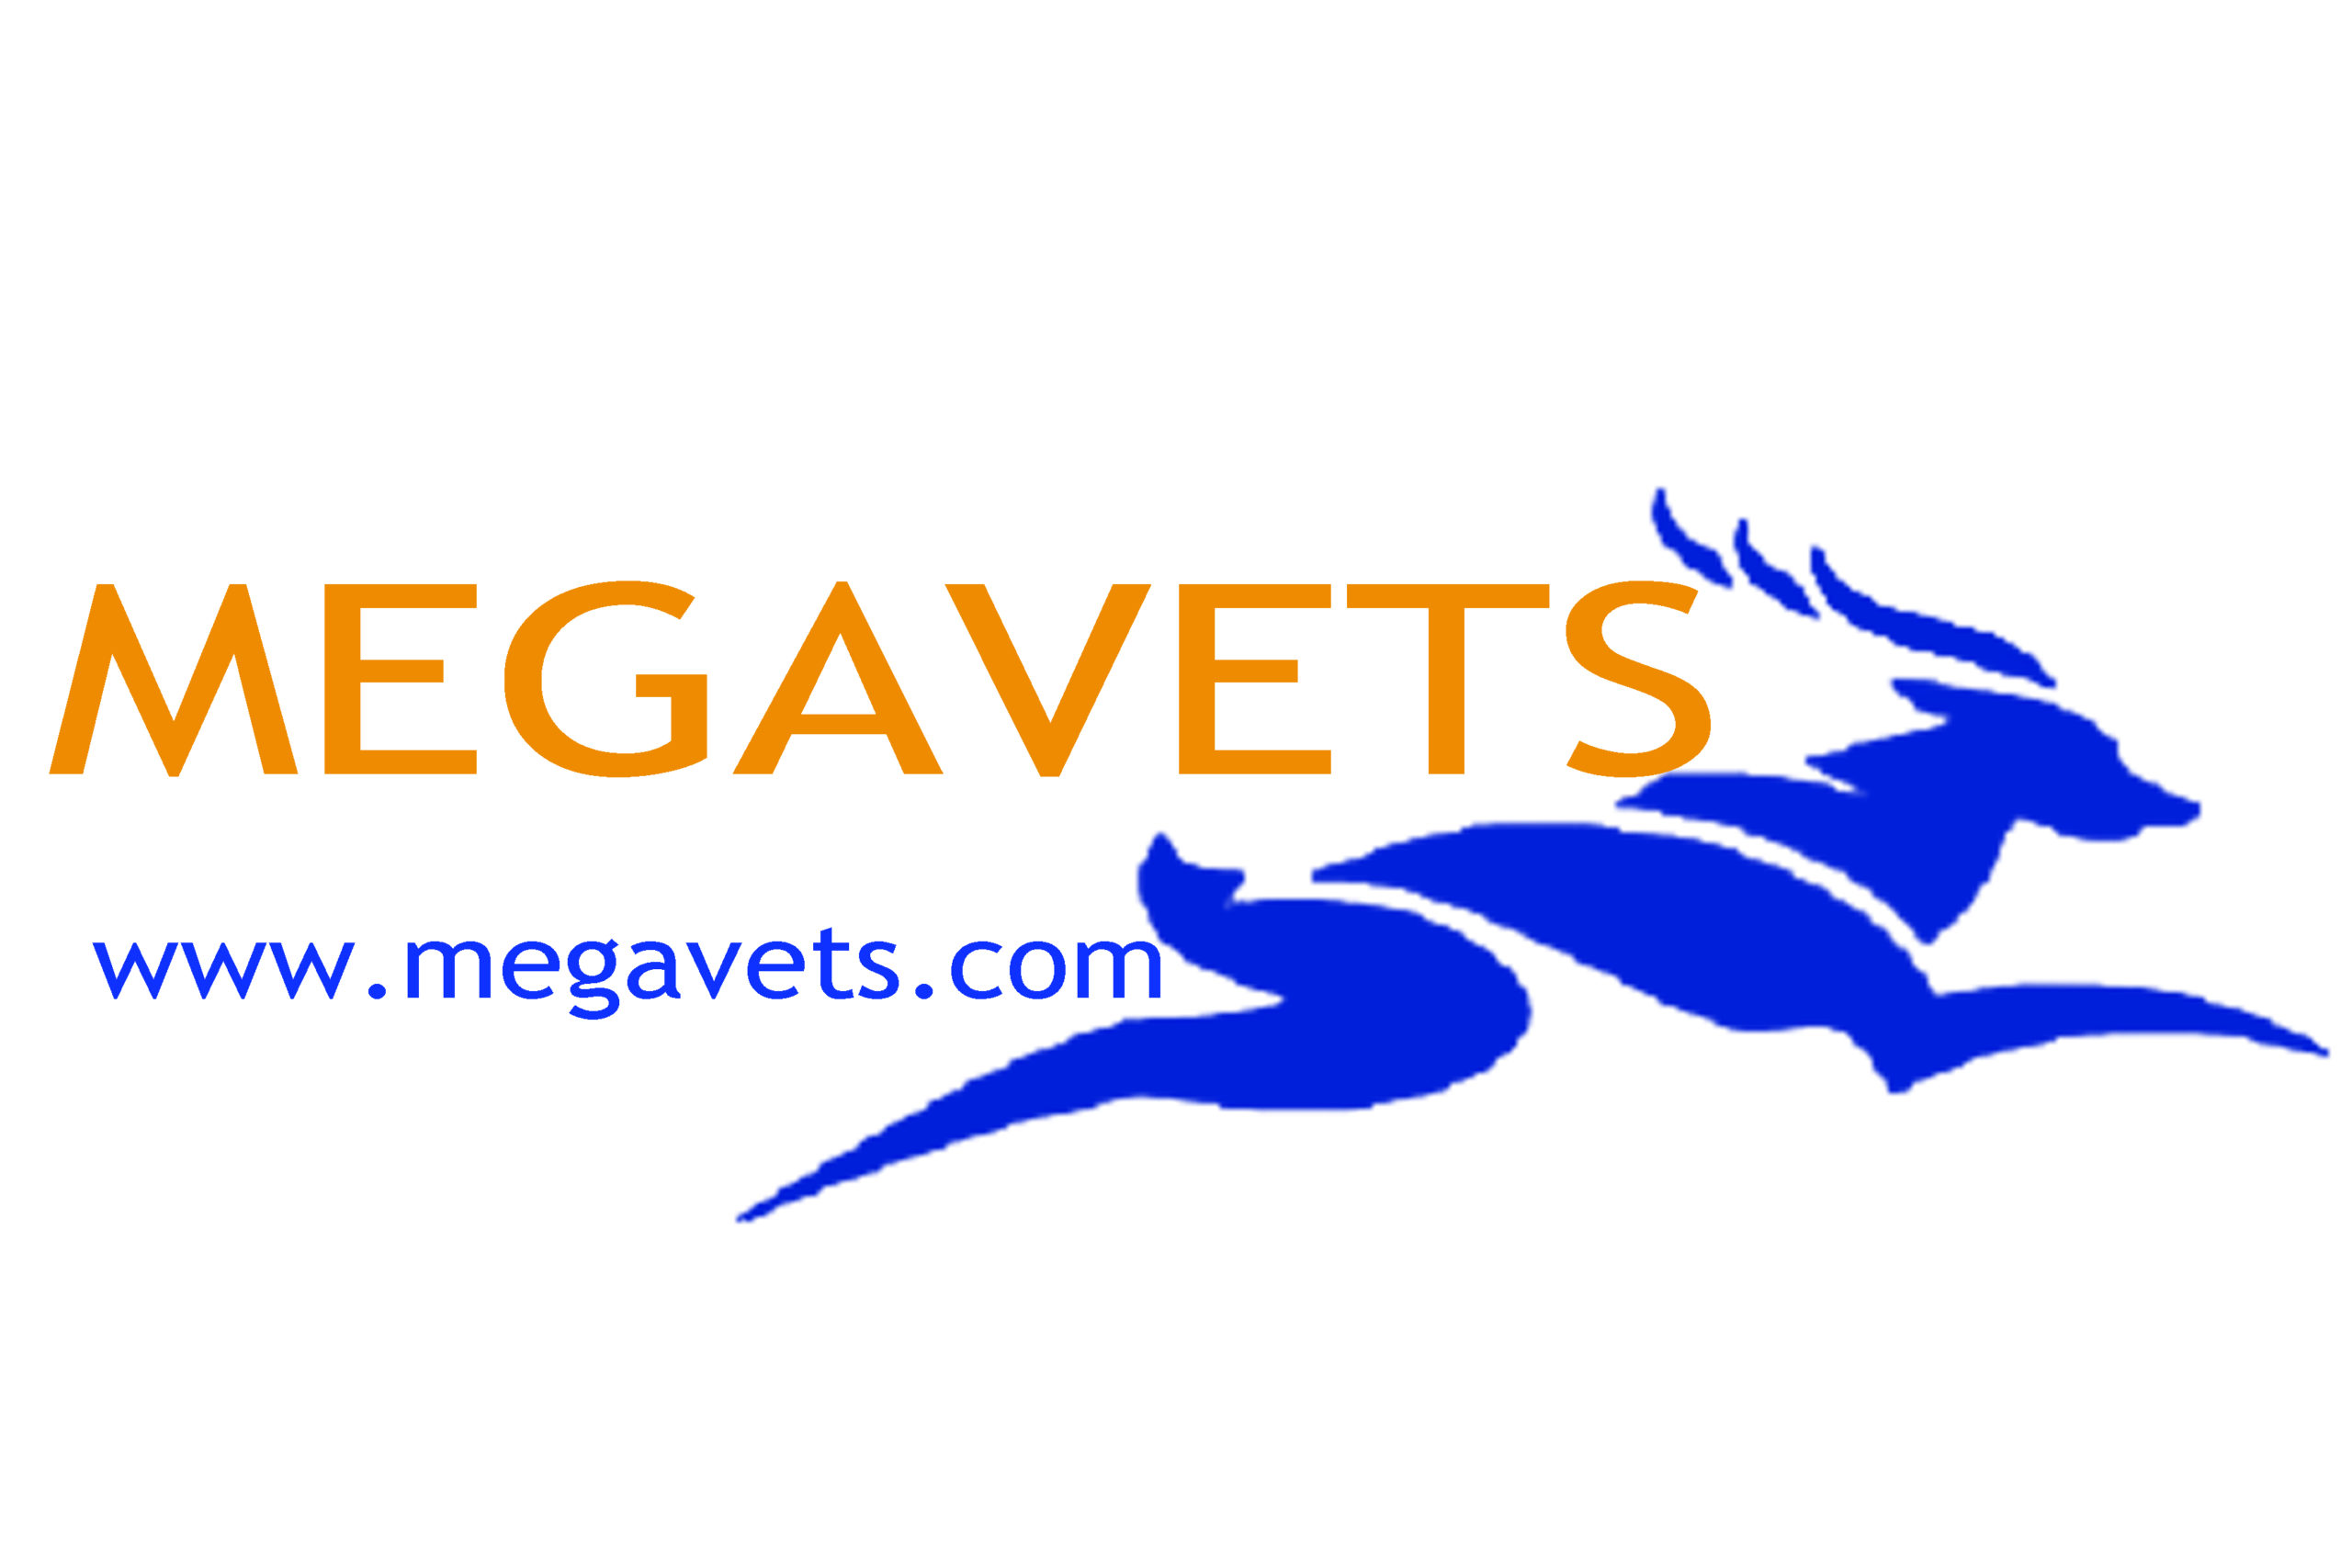 MEGAVETS LLC